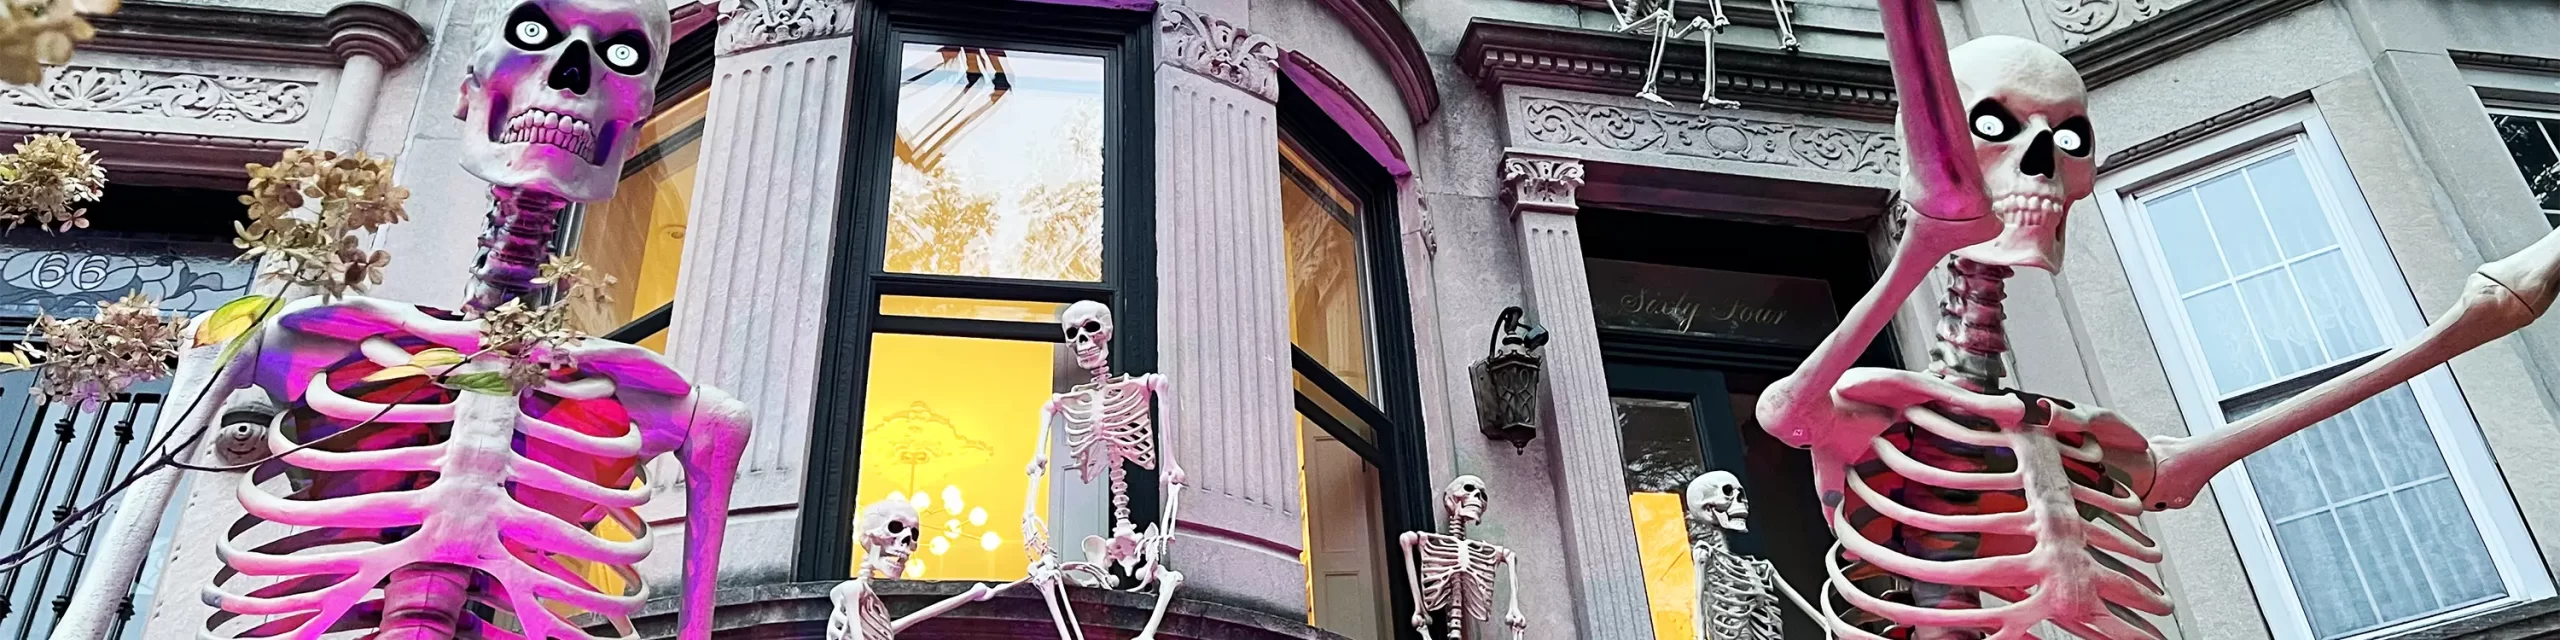 Skeleton decorations on Brooklyn brownstones